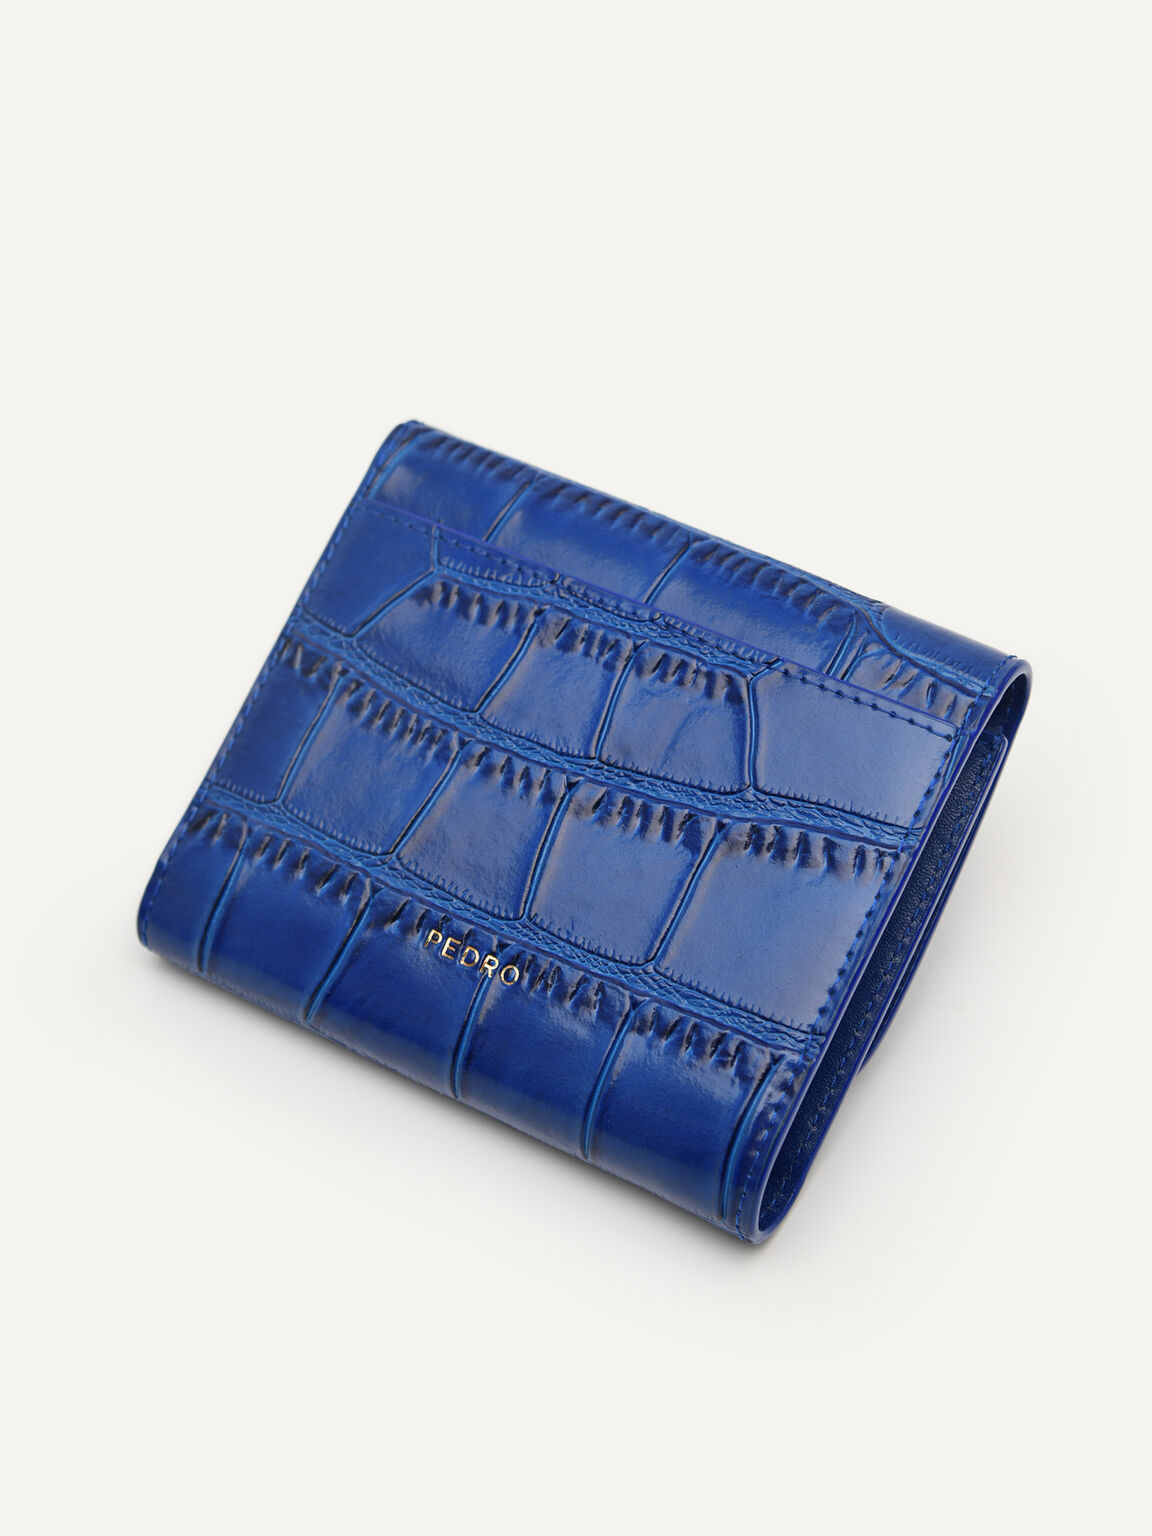 PEDRO工作室皮革三折疊錢包, 海军蓝色